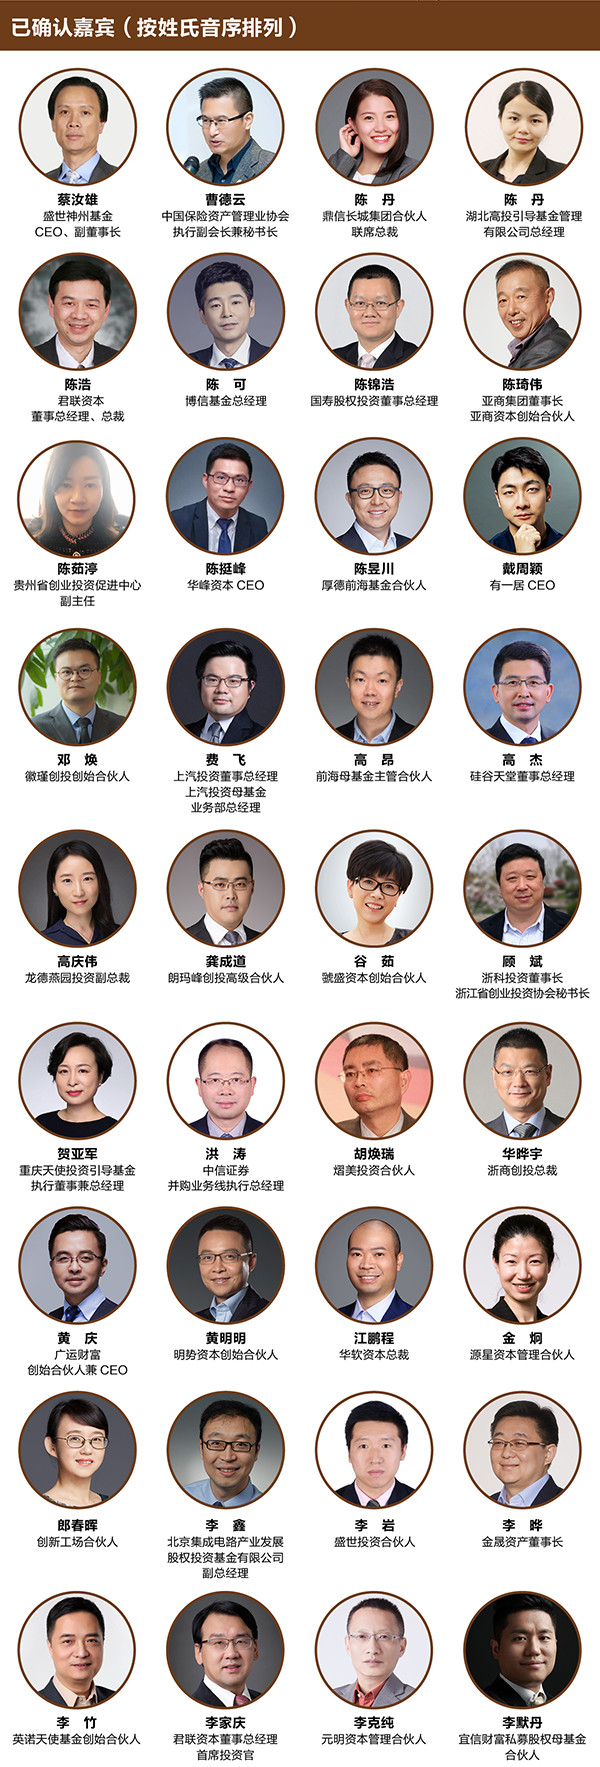 融资中国2019（第八届）资本年会